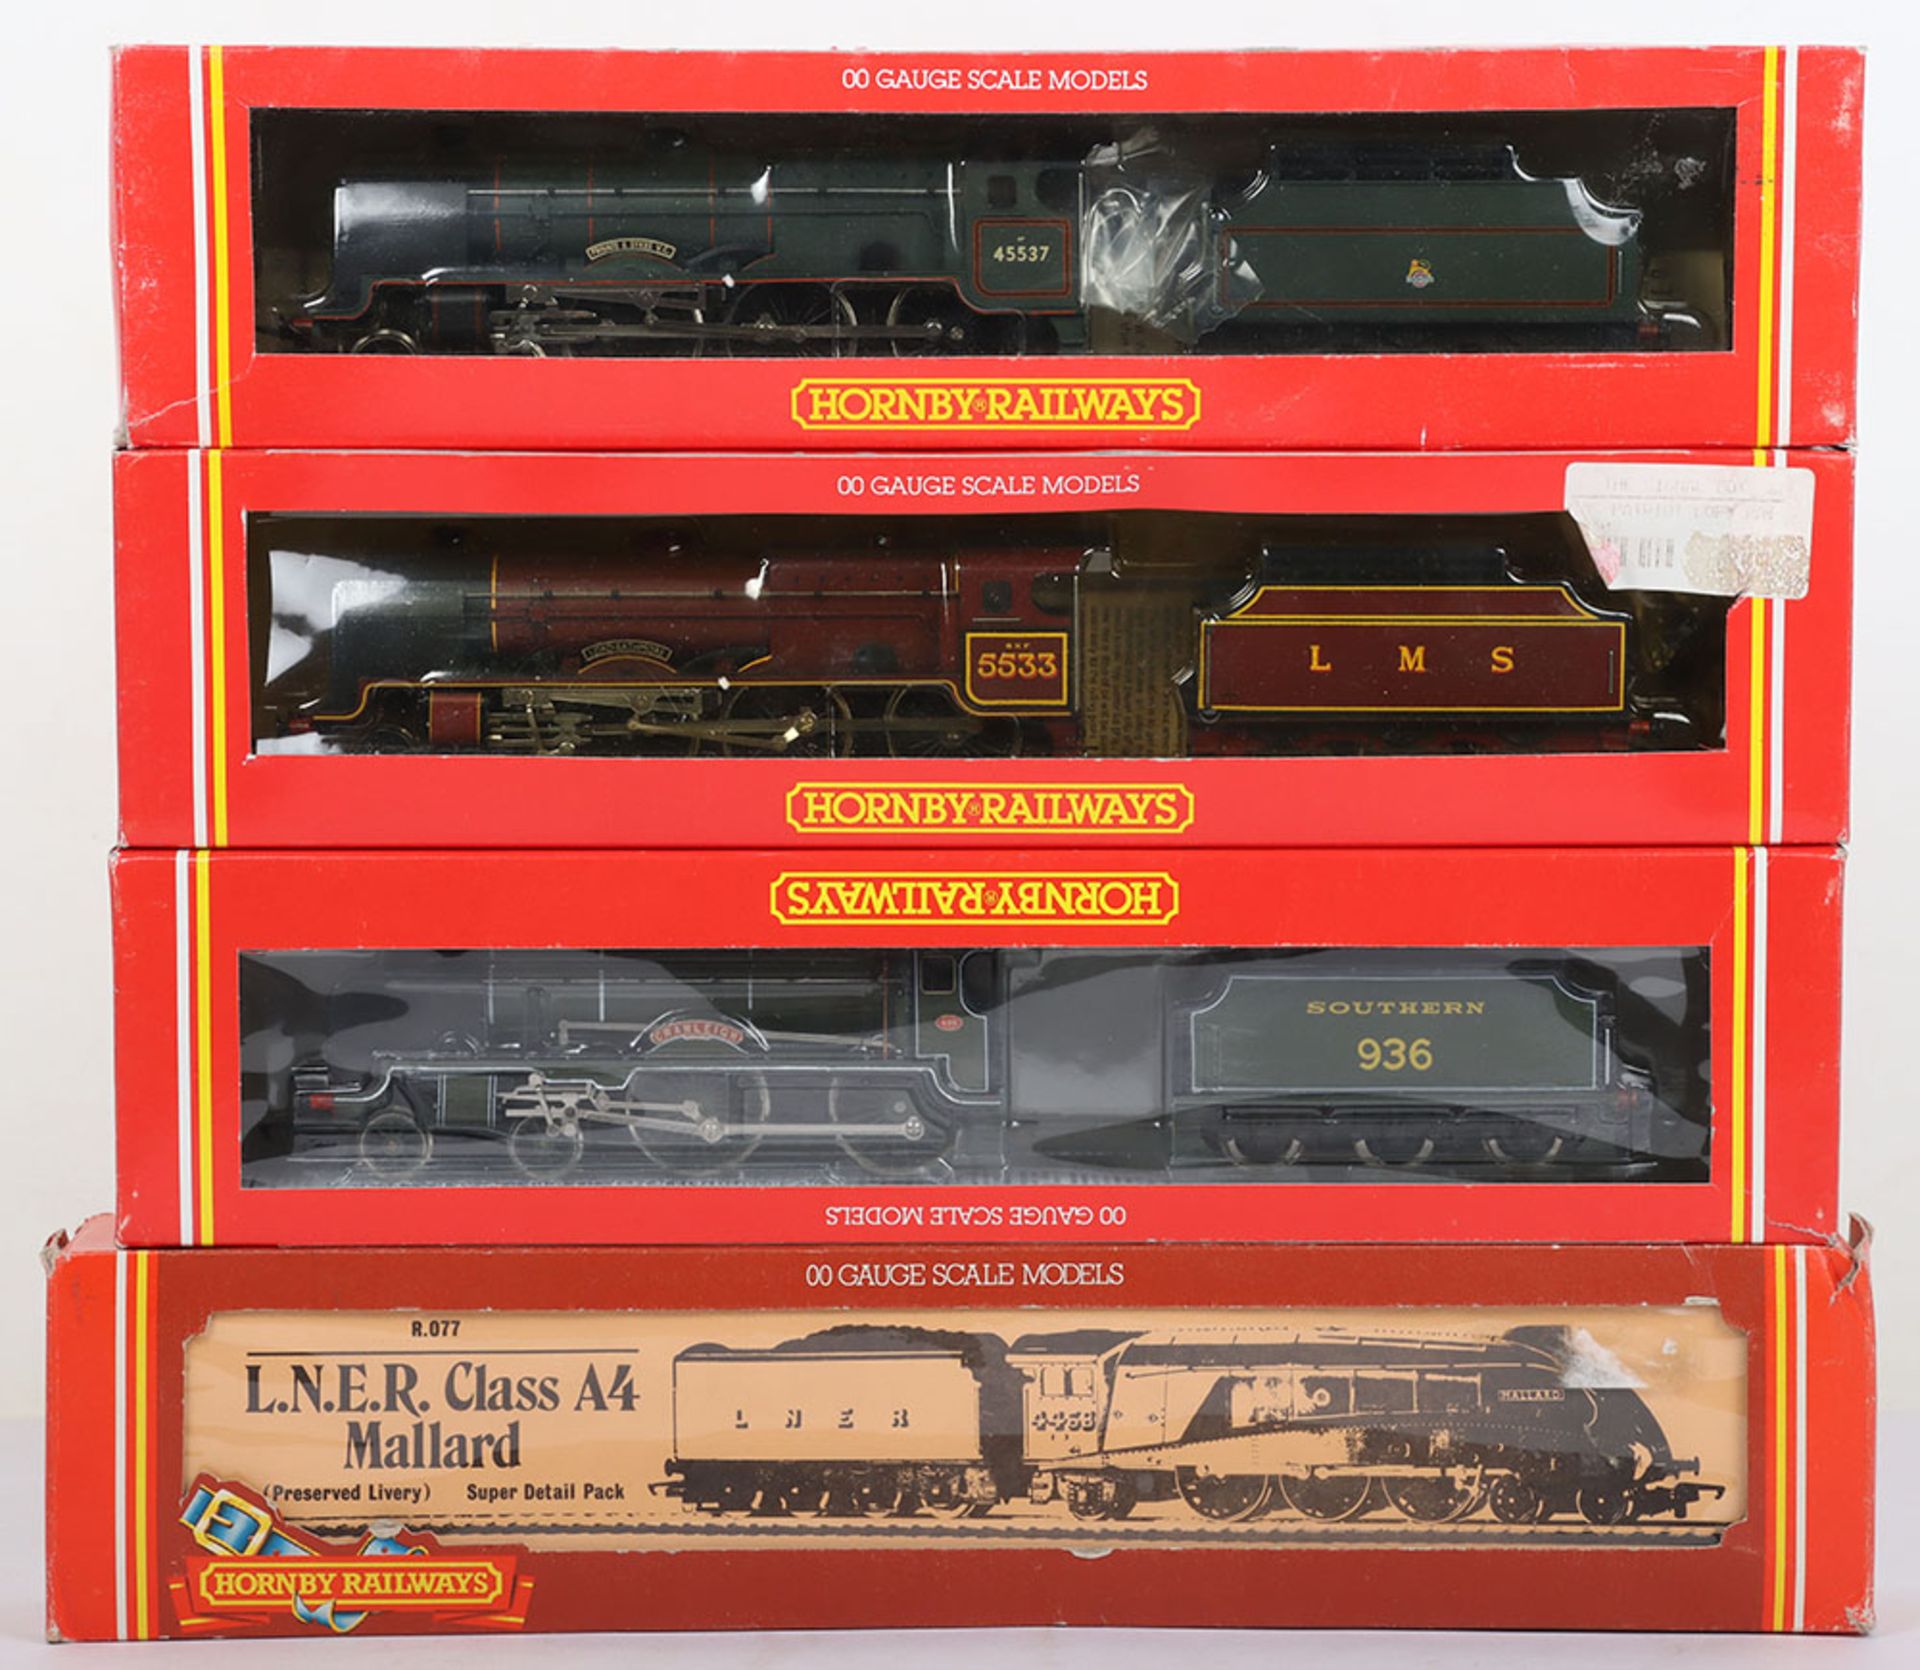 Four Hornby Railway locomotives